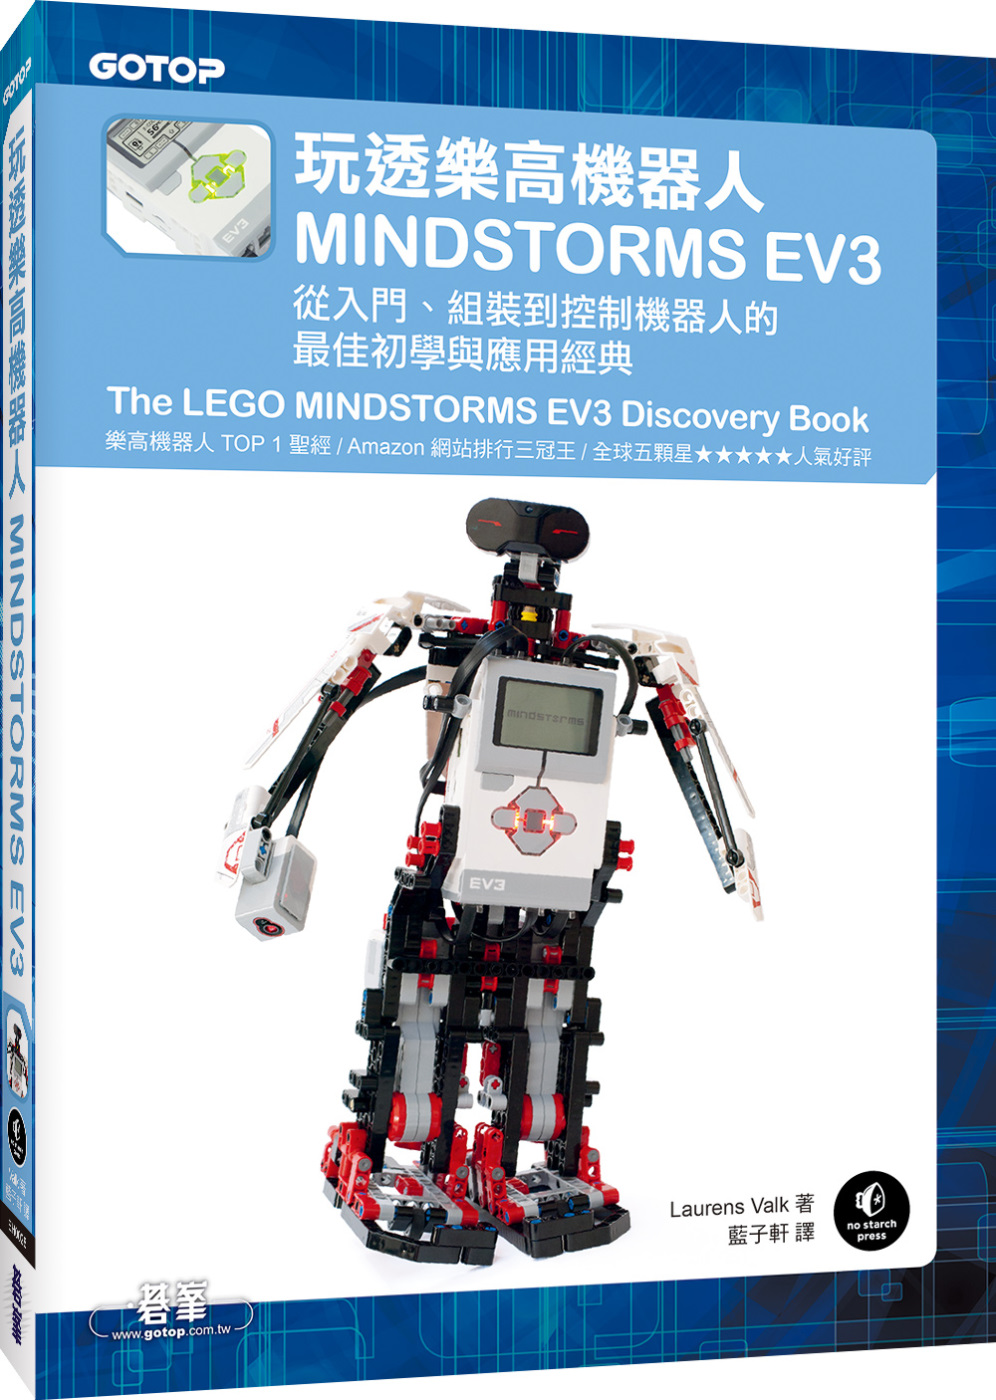 玩透樂高機器人MINDSTORMS EV3：從入門、組裝到控制機器人的最佳初學與應用經典(Amazon排行三冠王的TOP 1聖經)